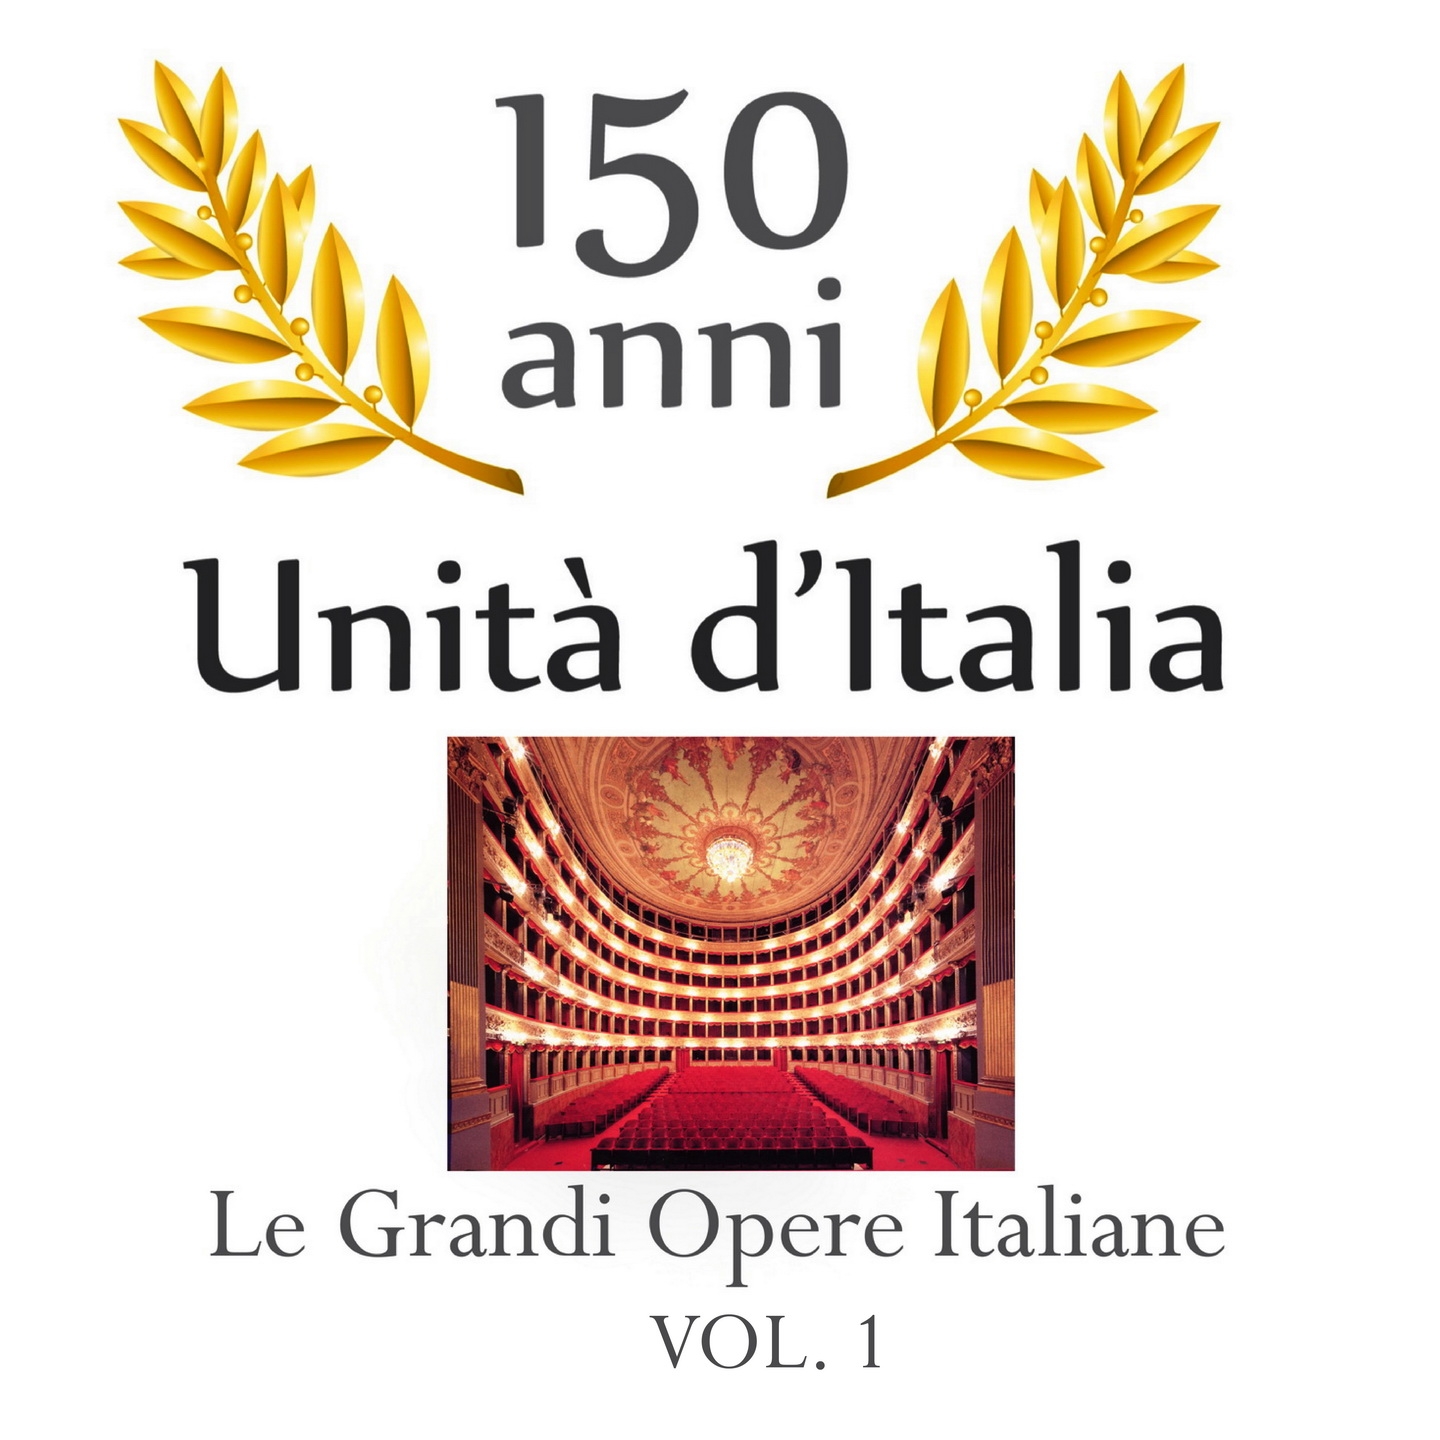 150 anniversario unita' d'Italia : Le grandi opere Italiane, vol. 1